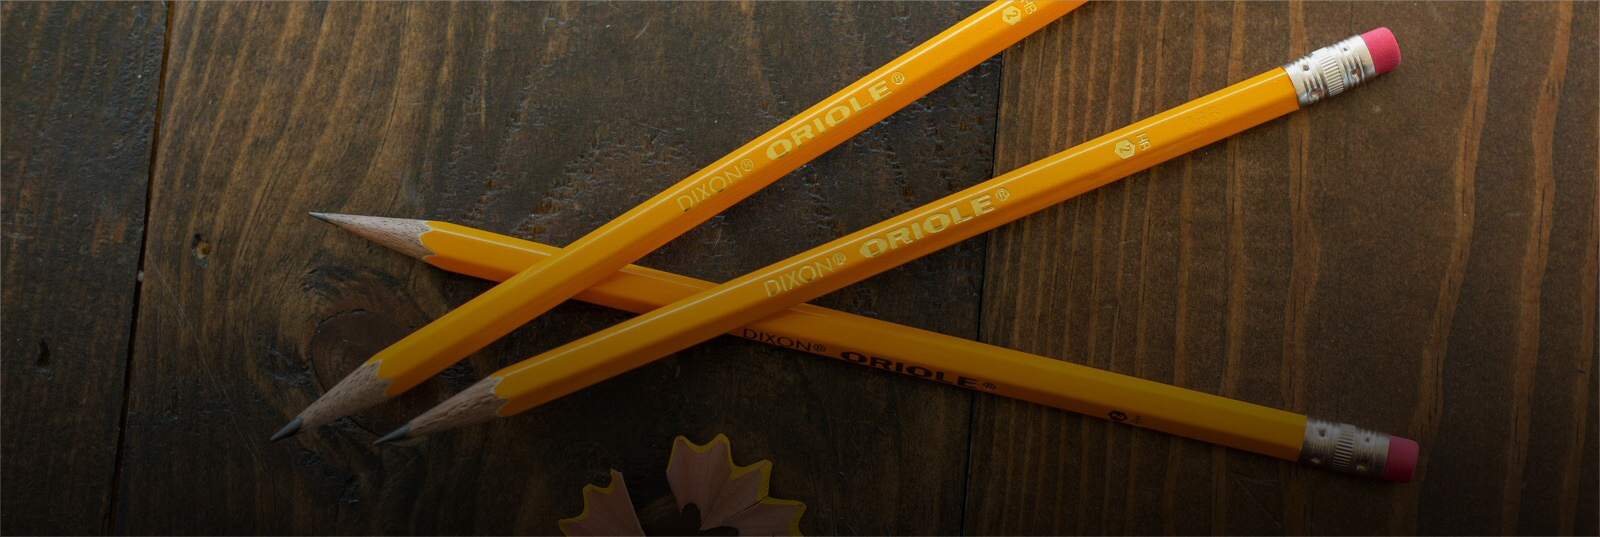 Dixon Oriole Pencil Set